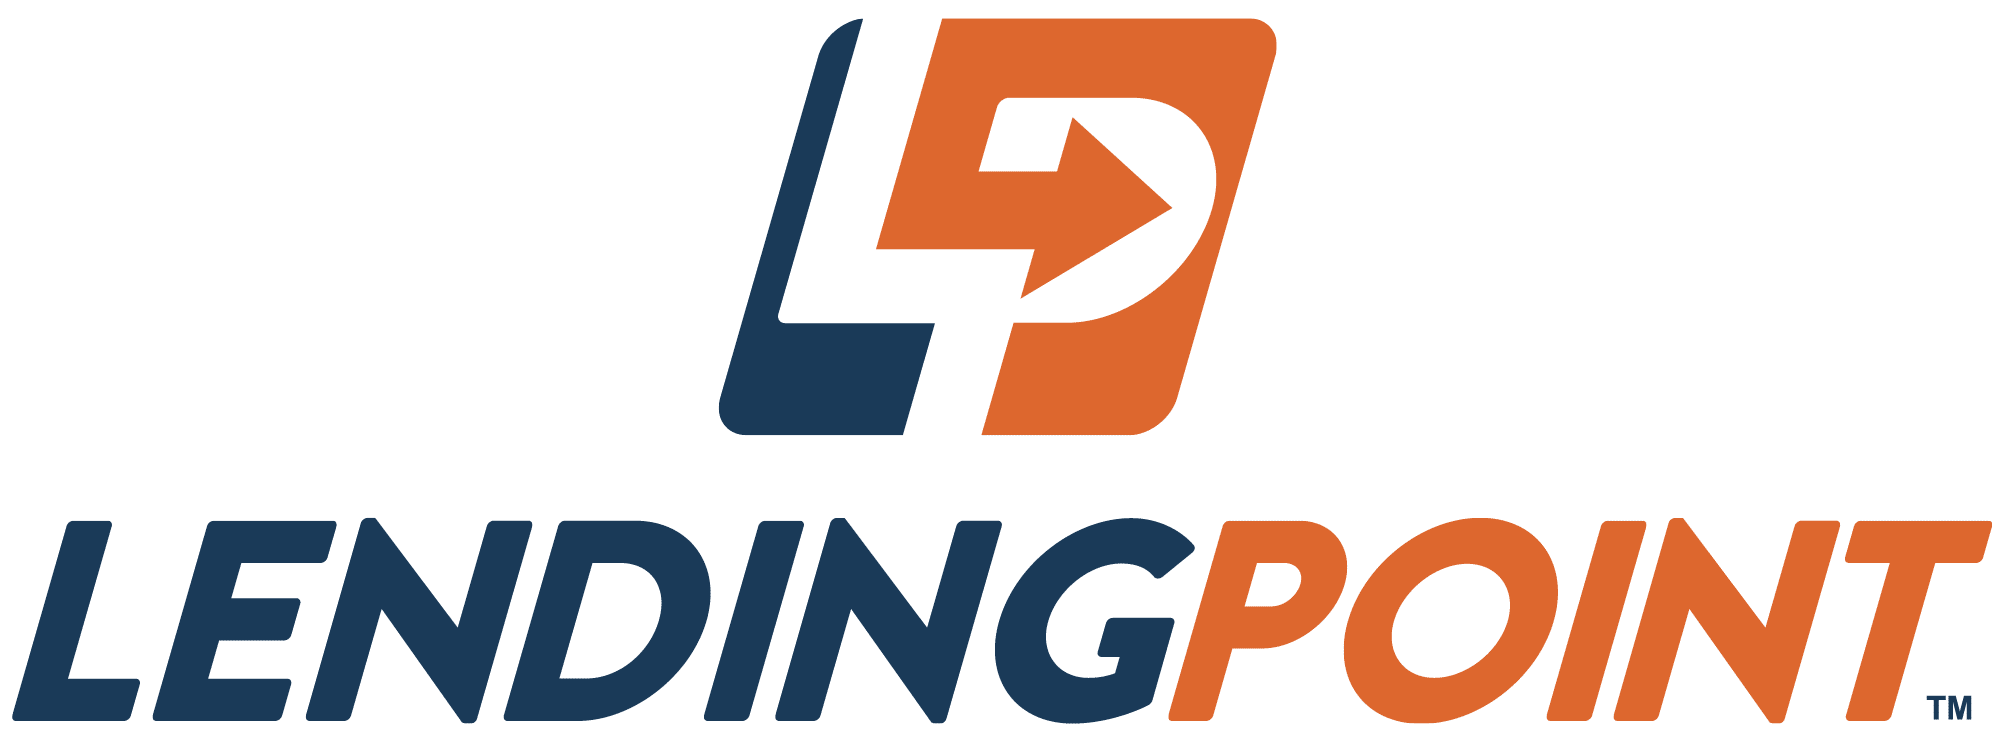 Lending Point Logo Image